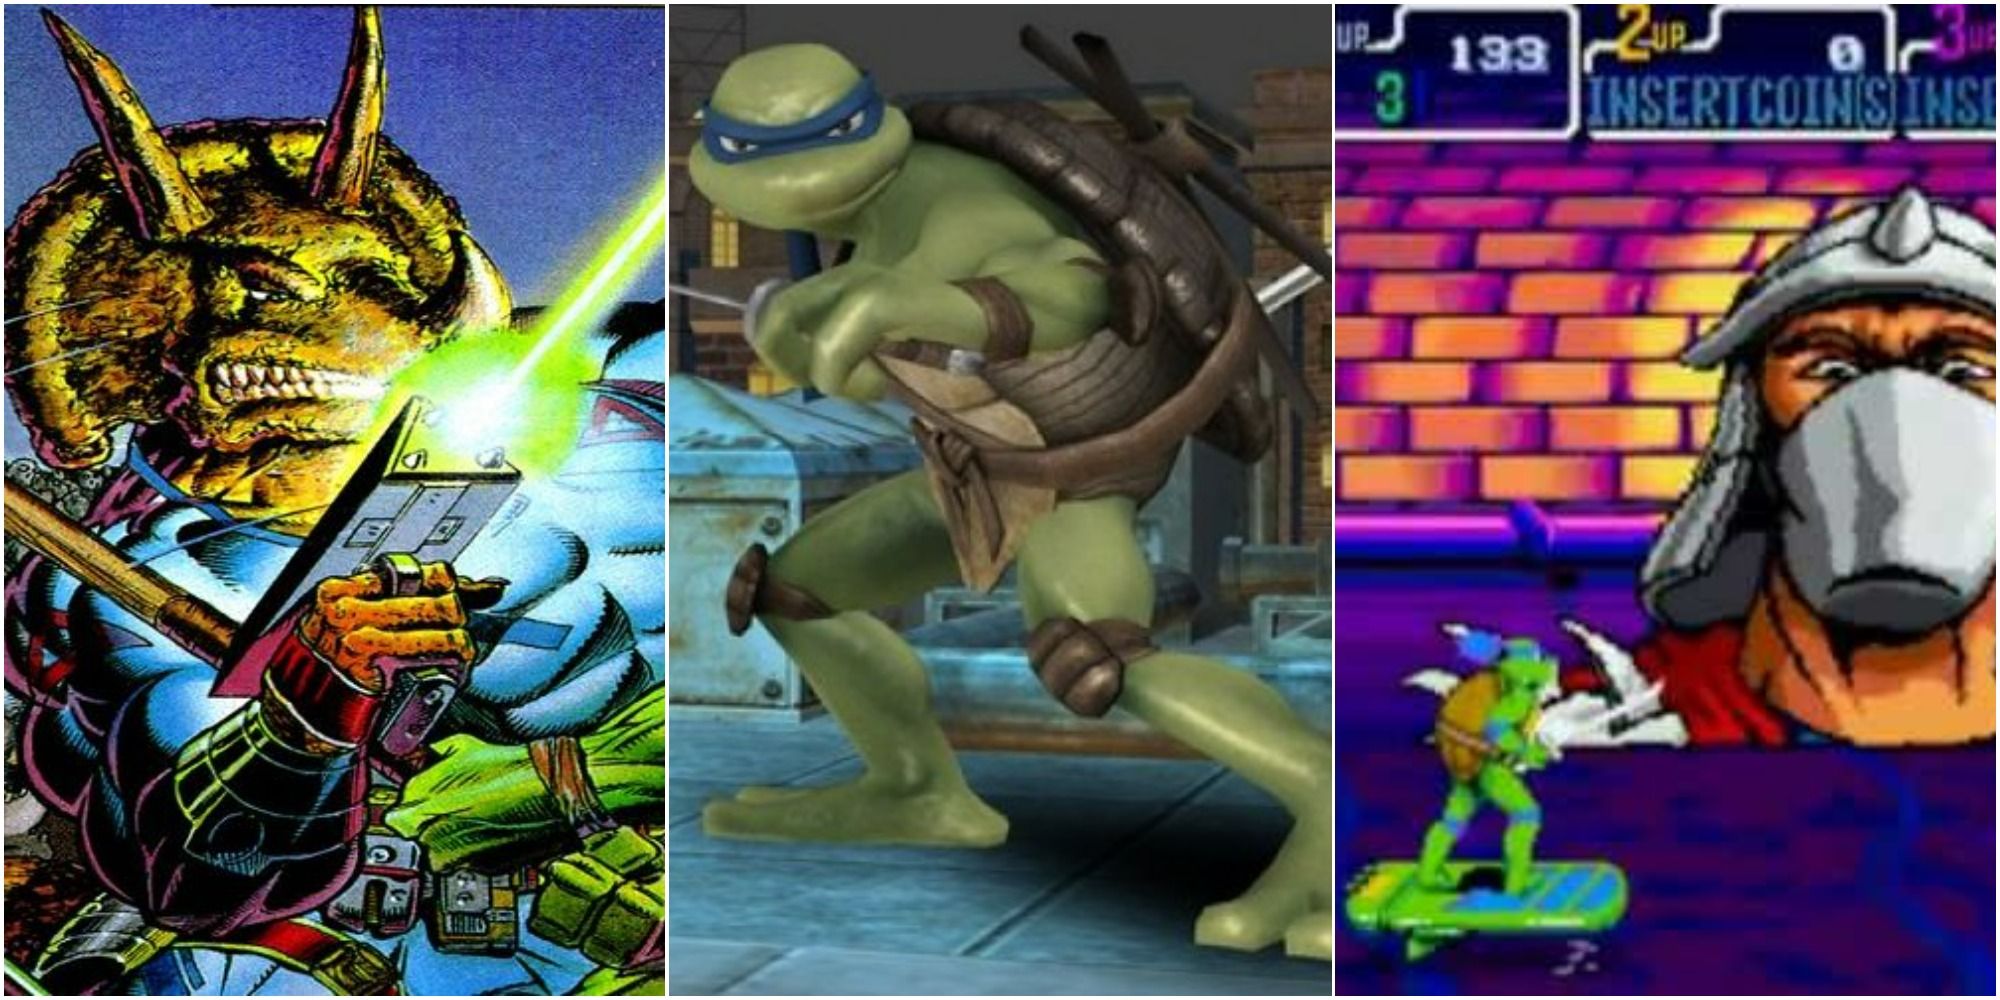 Top 10 Teenage Mutant Ninja Turtles Video Games